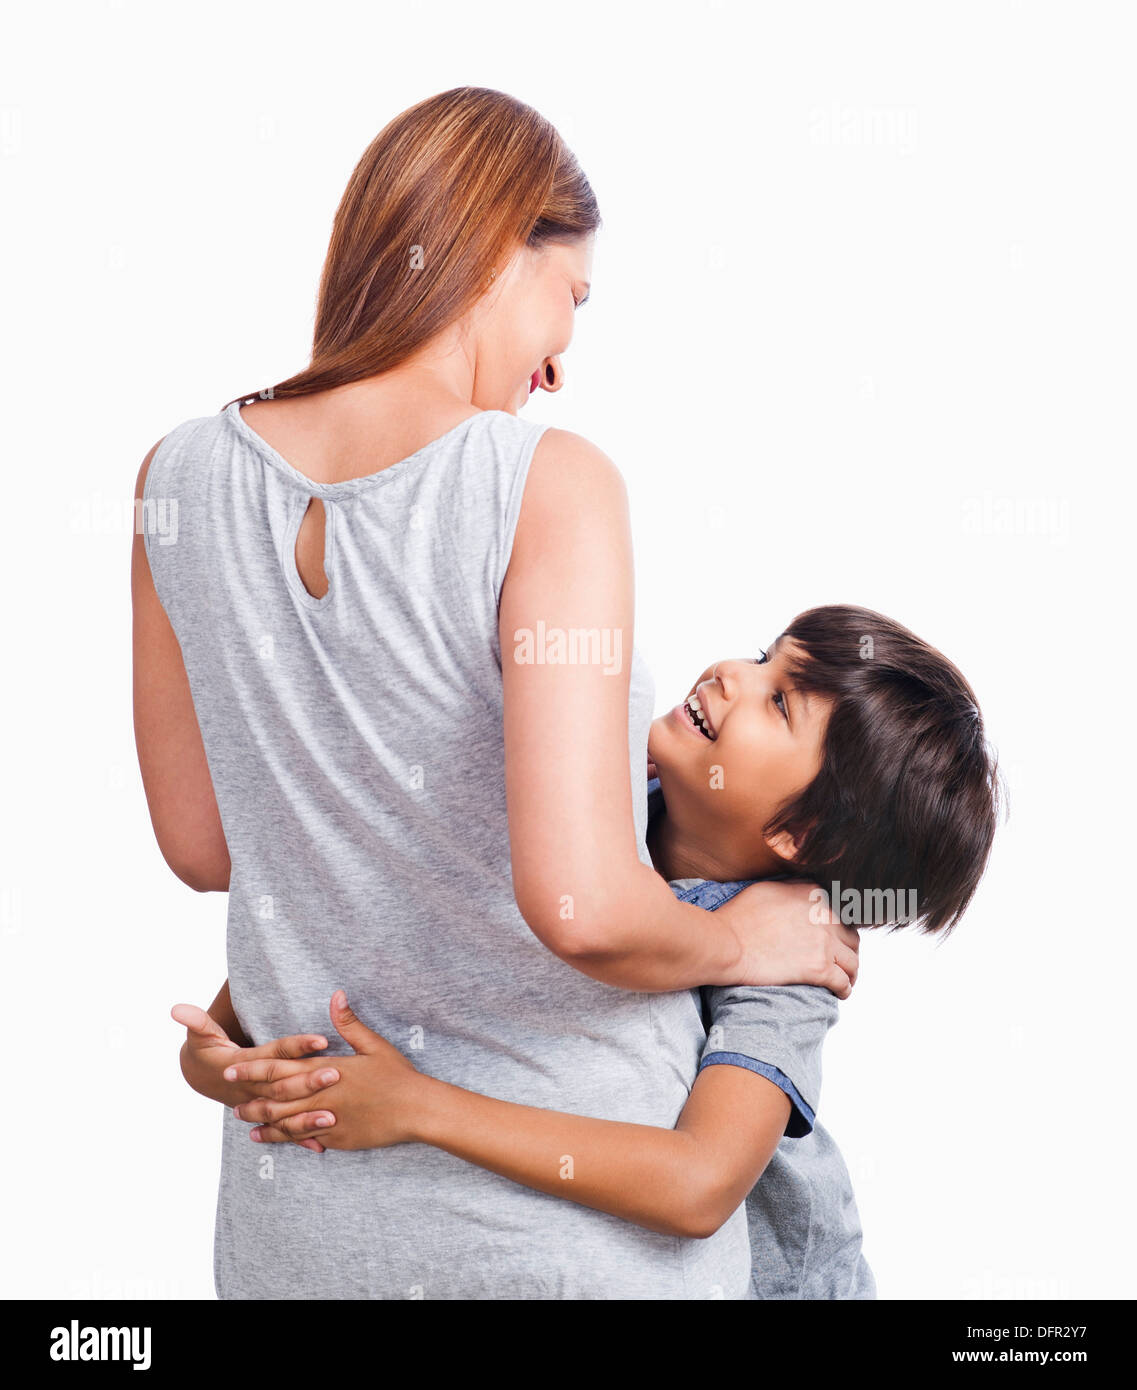 Junge seine Mutter umarmt und lächelnd Stockfoto